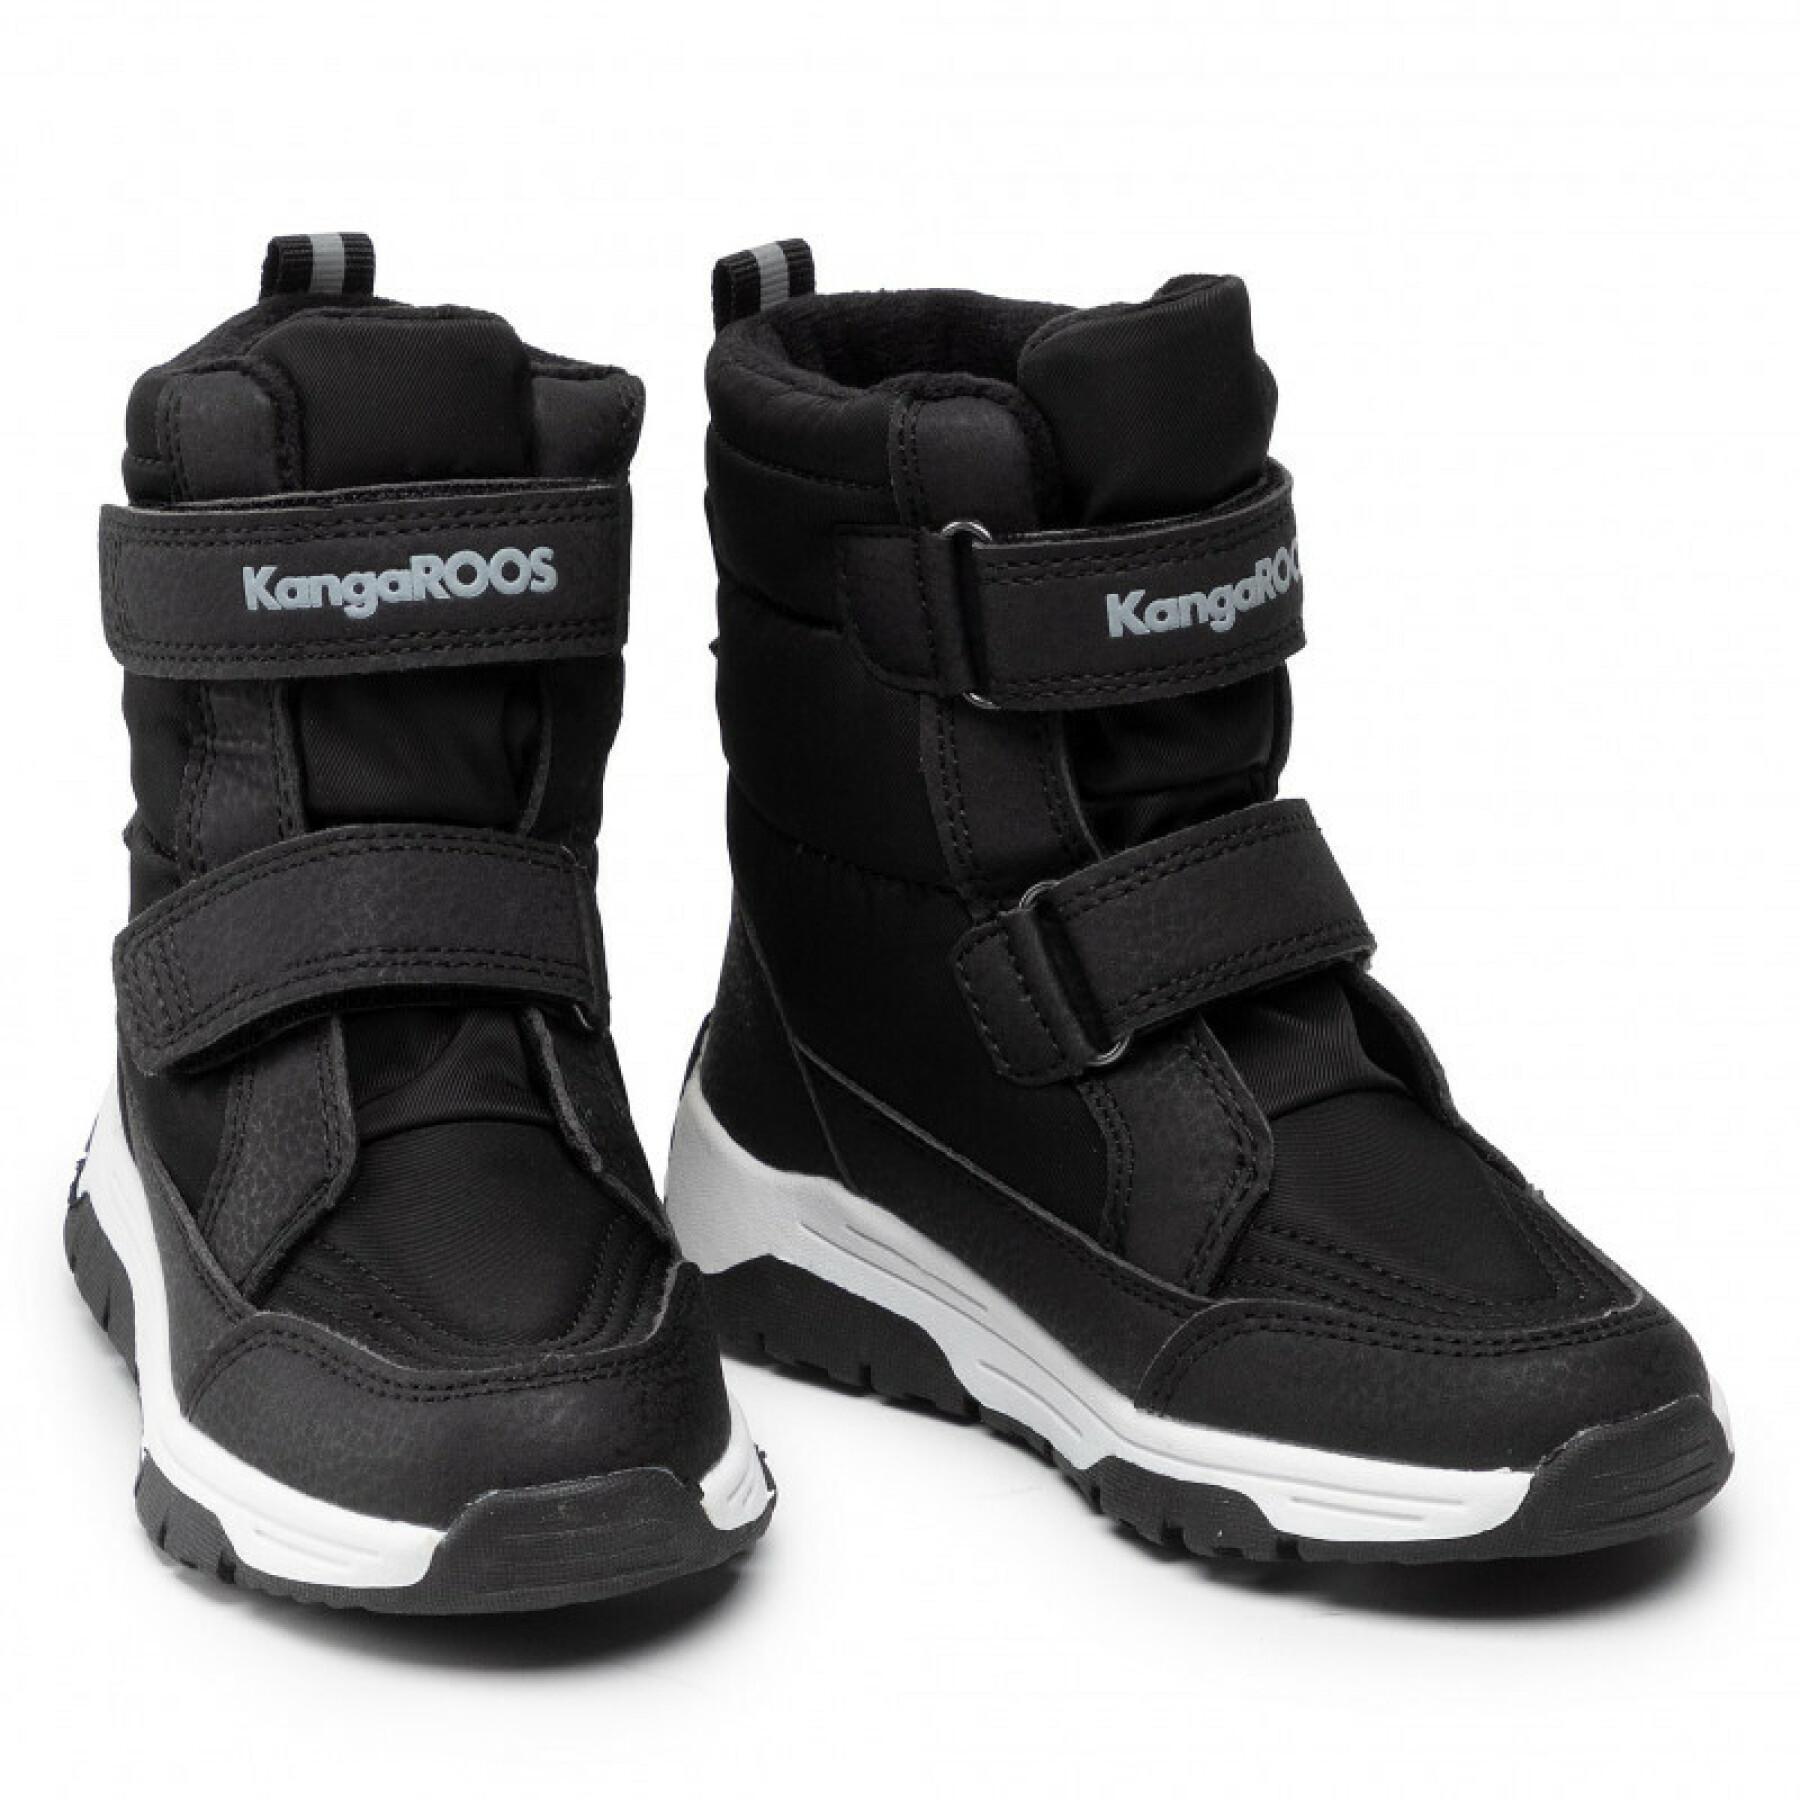 Children's sneakers KangaROOS K-Major V RTX